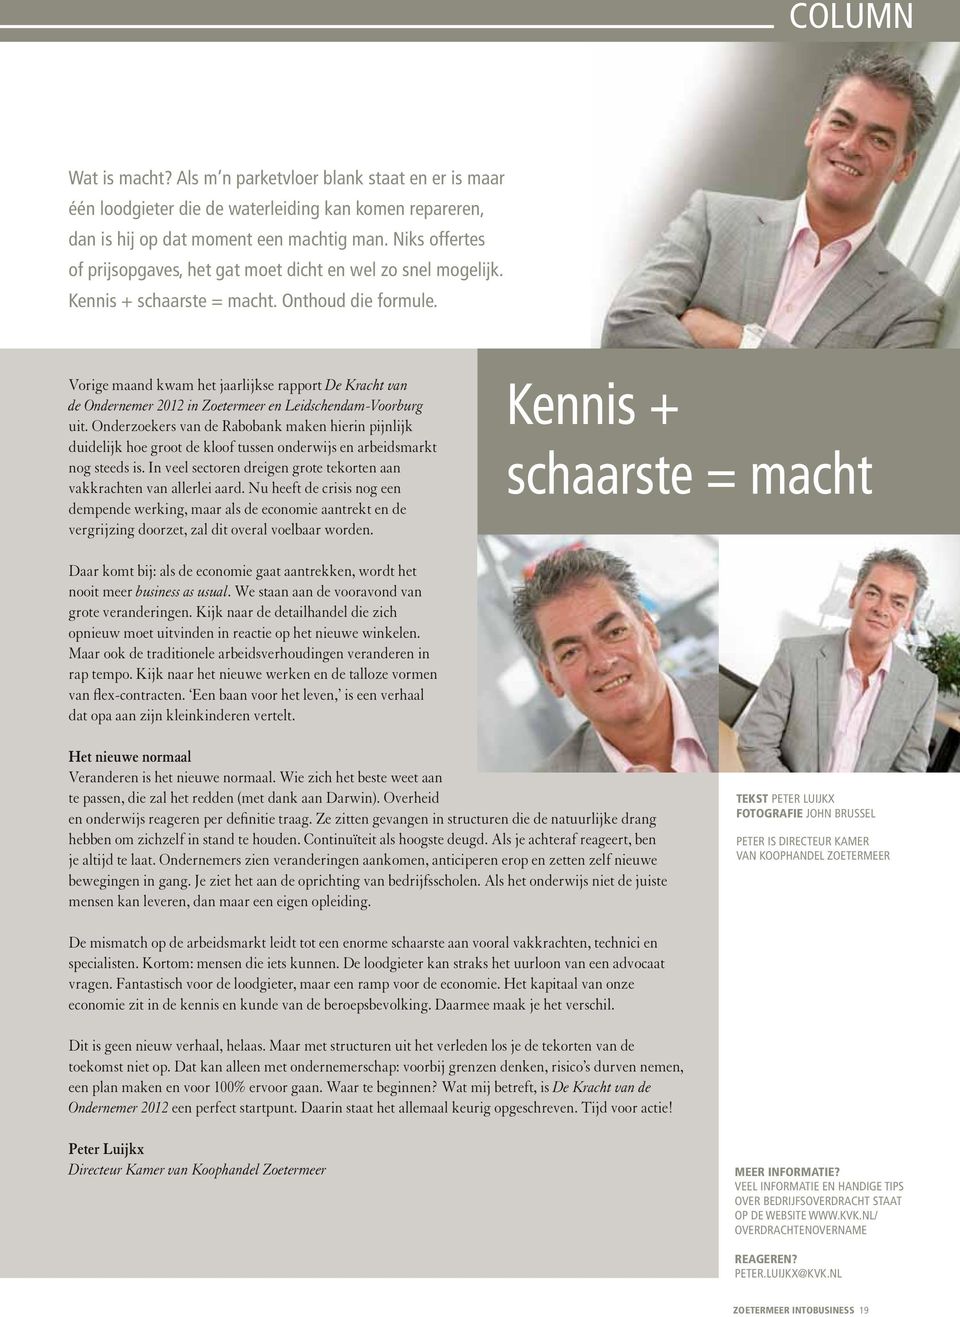 Vorige maand kwam het jaarlijkse rapport De Kracht van de Ondernemer 2012 in Zoetermeer en Leidschendam-Voorburg uit.